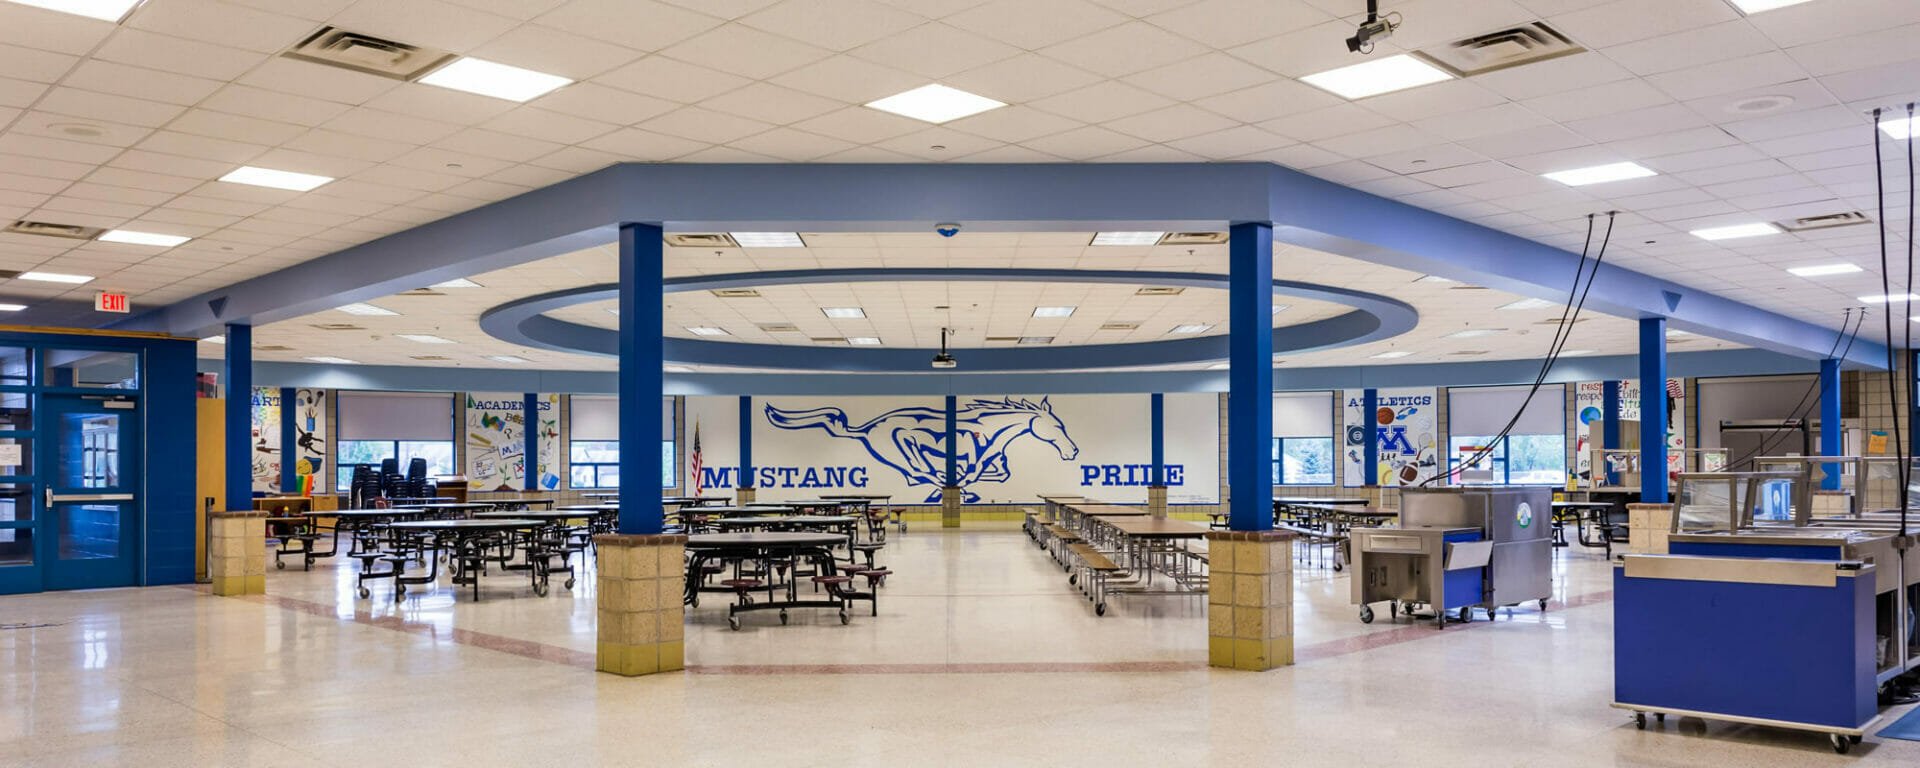 Mora Public School cafeteria